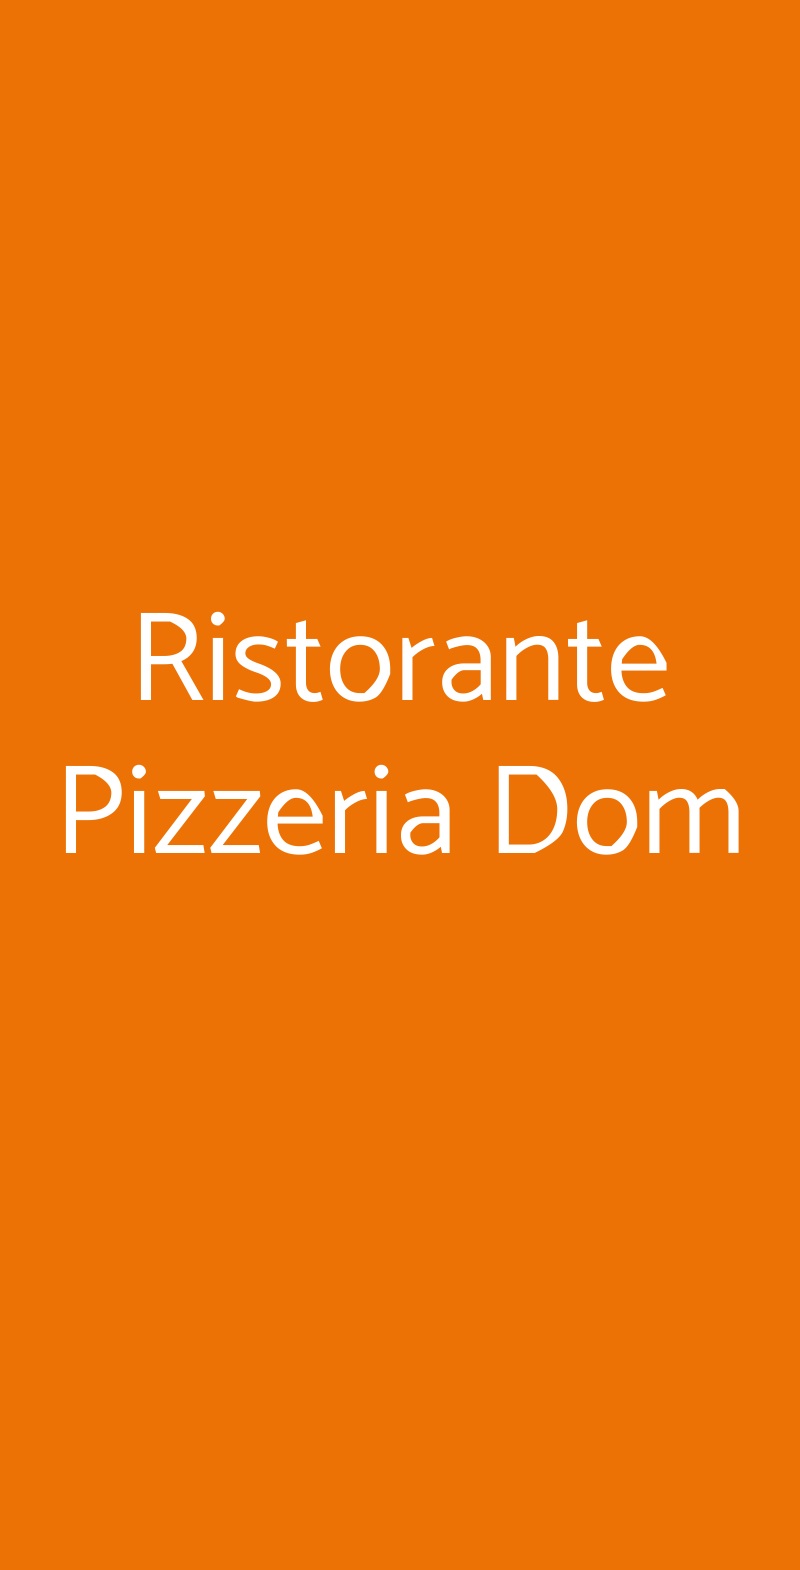 Ristorante Pizzeria Dom Torino menù 1 pagina